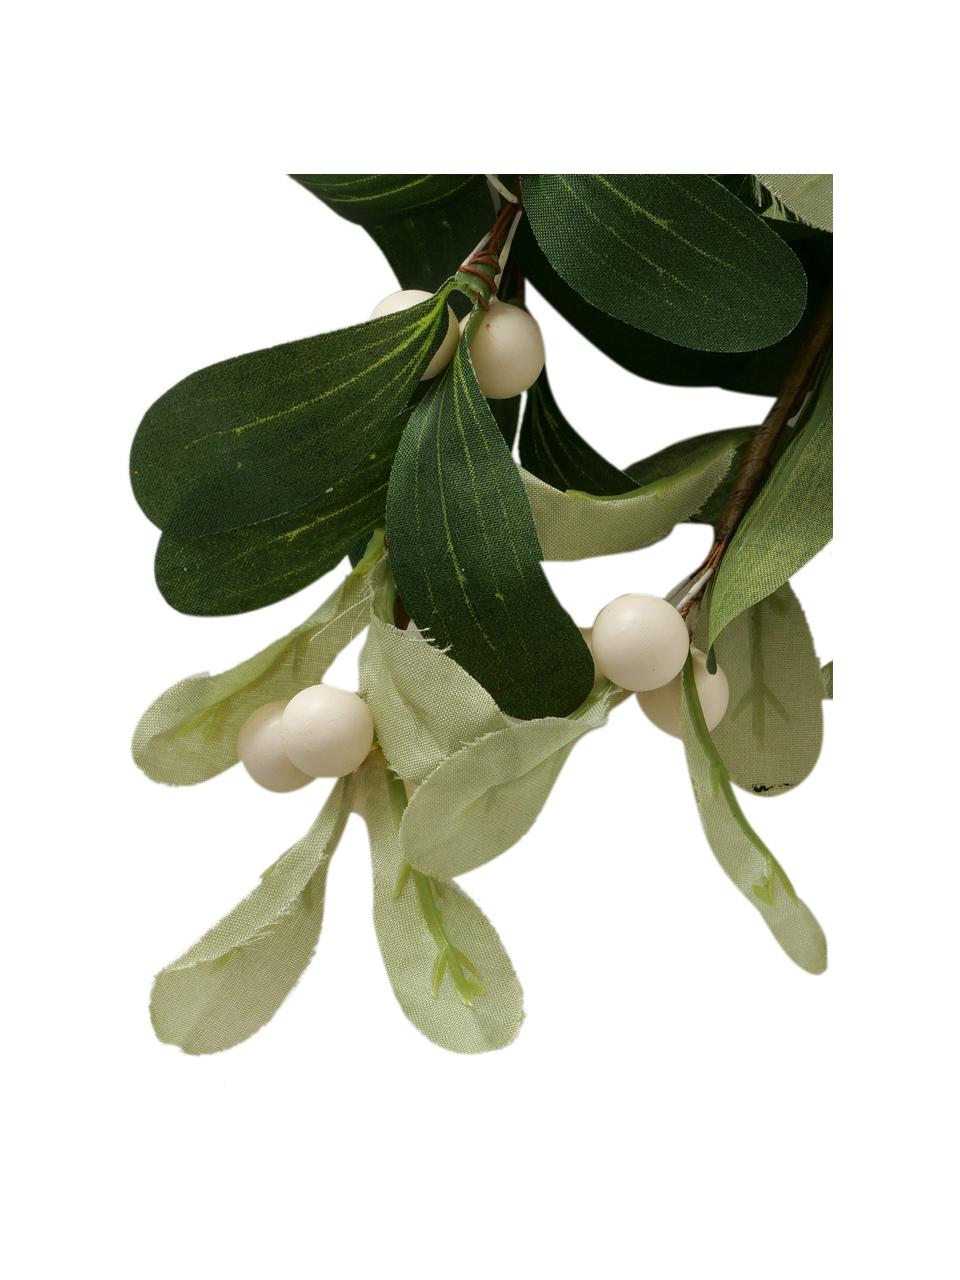 Dekoracja Mistletoe, Polietylen, Zielony, czerwony, biały, S 22 x W 28 cm